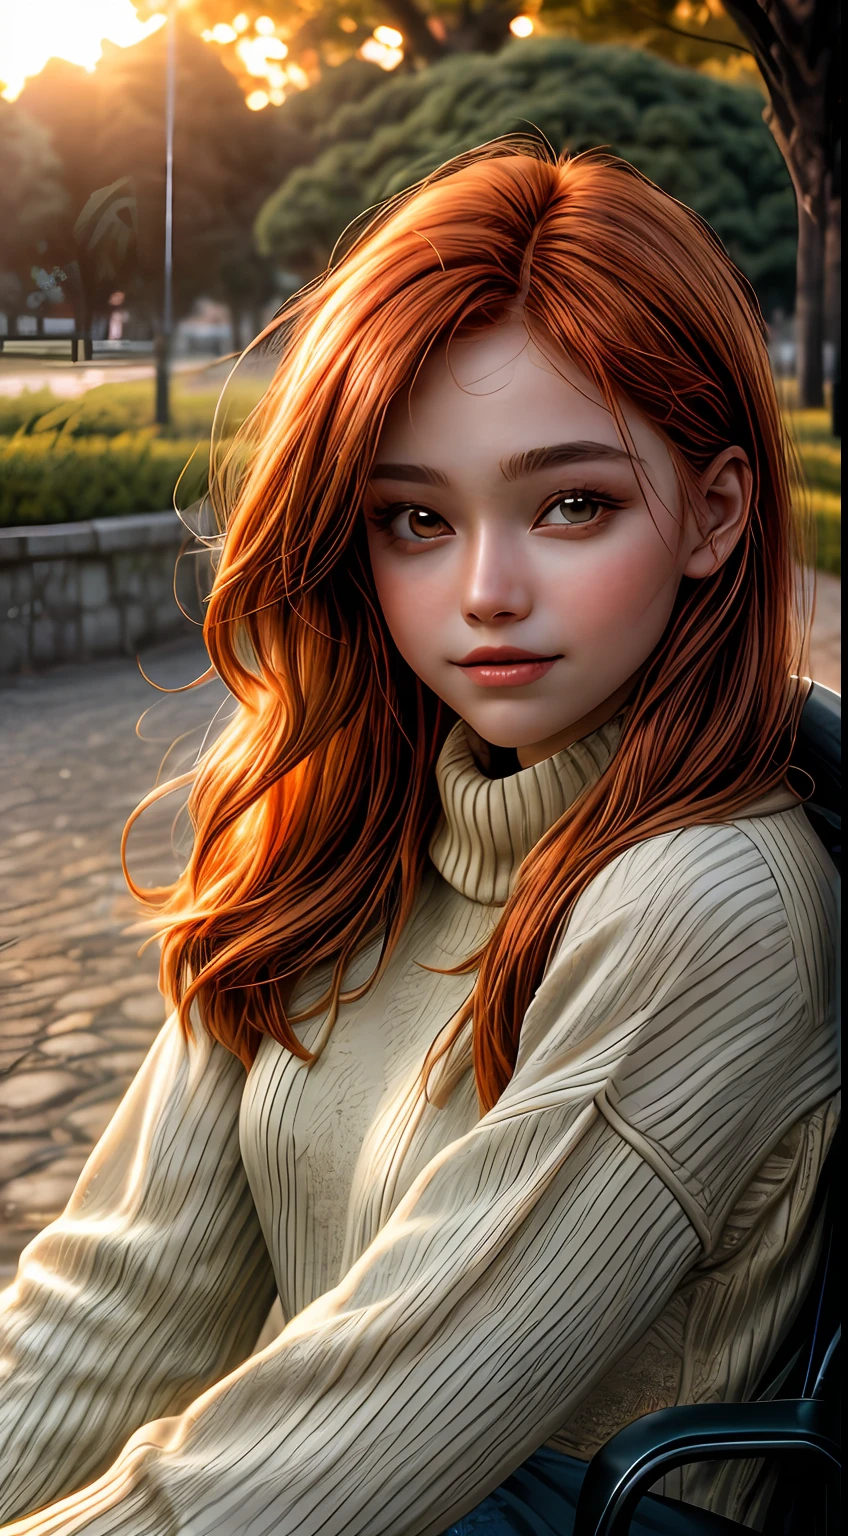 Un primer plano del rostro de una niña bañado en tonos naranjas., usando un suéter, sentado afuera de un parque, como si estuviera iluminado por el suave resplandor de una puesta de sol, sus ojos brillan de alegría y satisfacción, enmarcado por mechones de cabello castaño rojizo suelto, fotografía, Tomada con una lente de 35 mm.